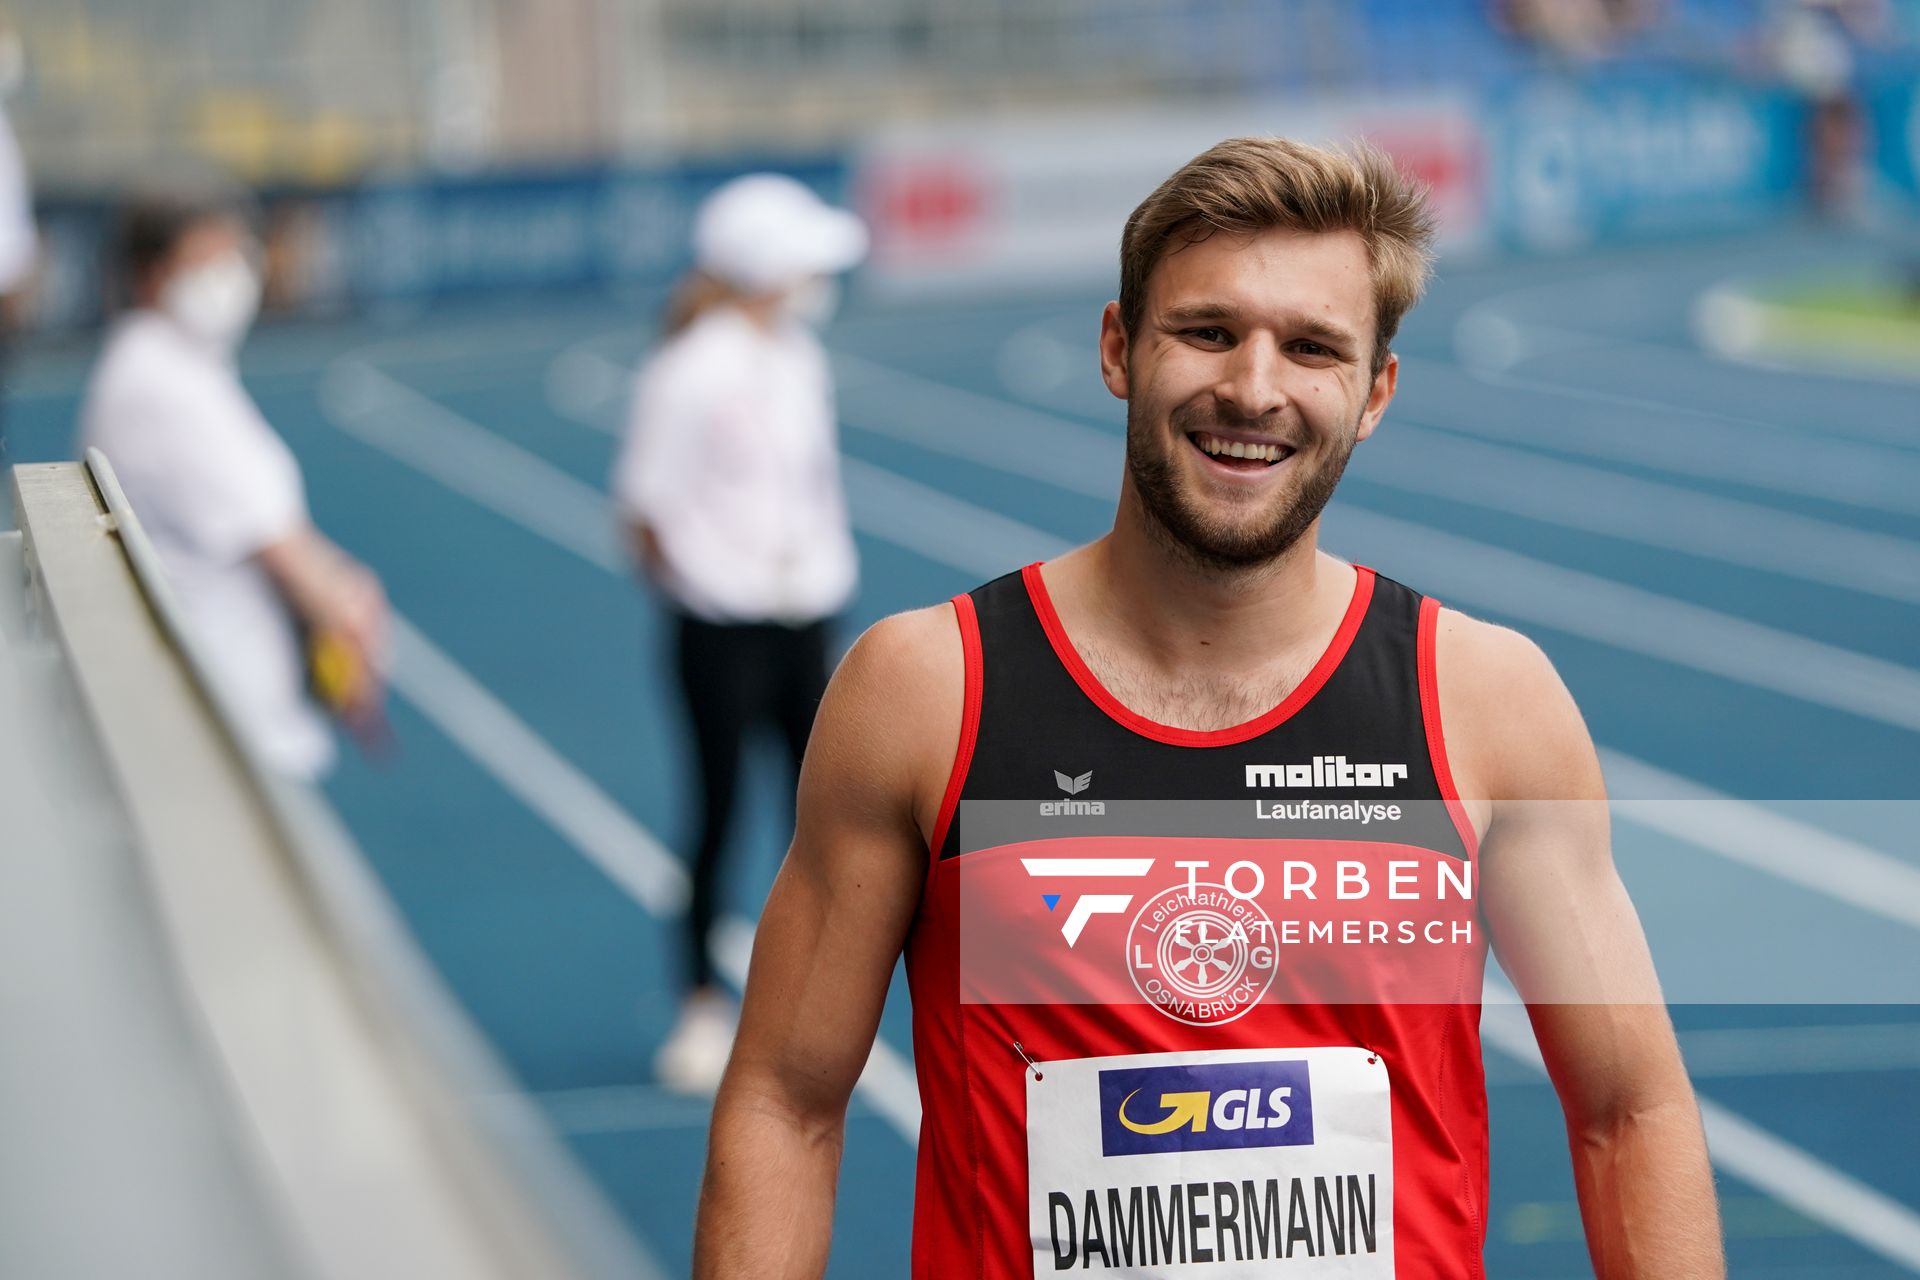 Fabian Dammermann (LG Osnabrueck) im Vorlauf am 05.06.2021 waehrend den deutschen Leichtathletik-Meisterschaften 2021 im Eintracht-Stadion in Braunschweig